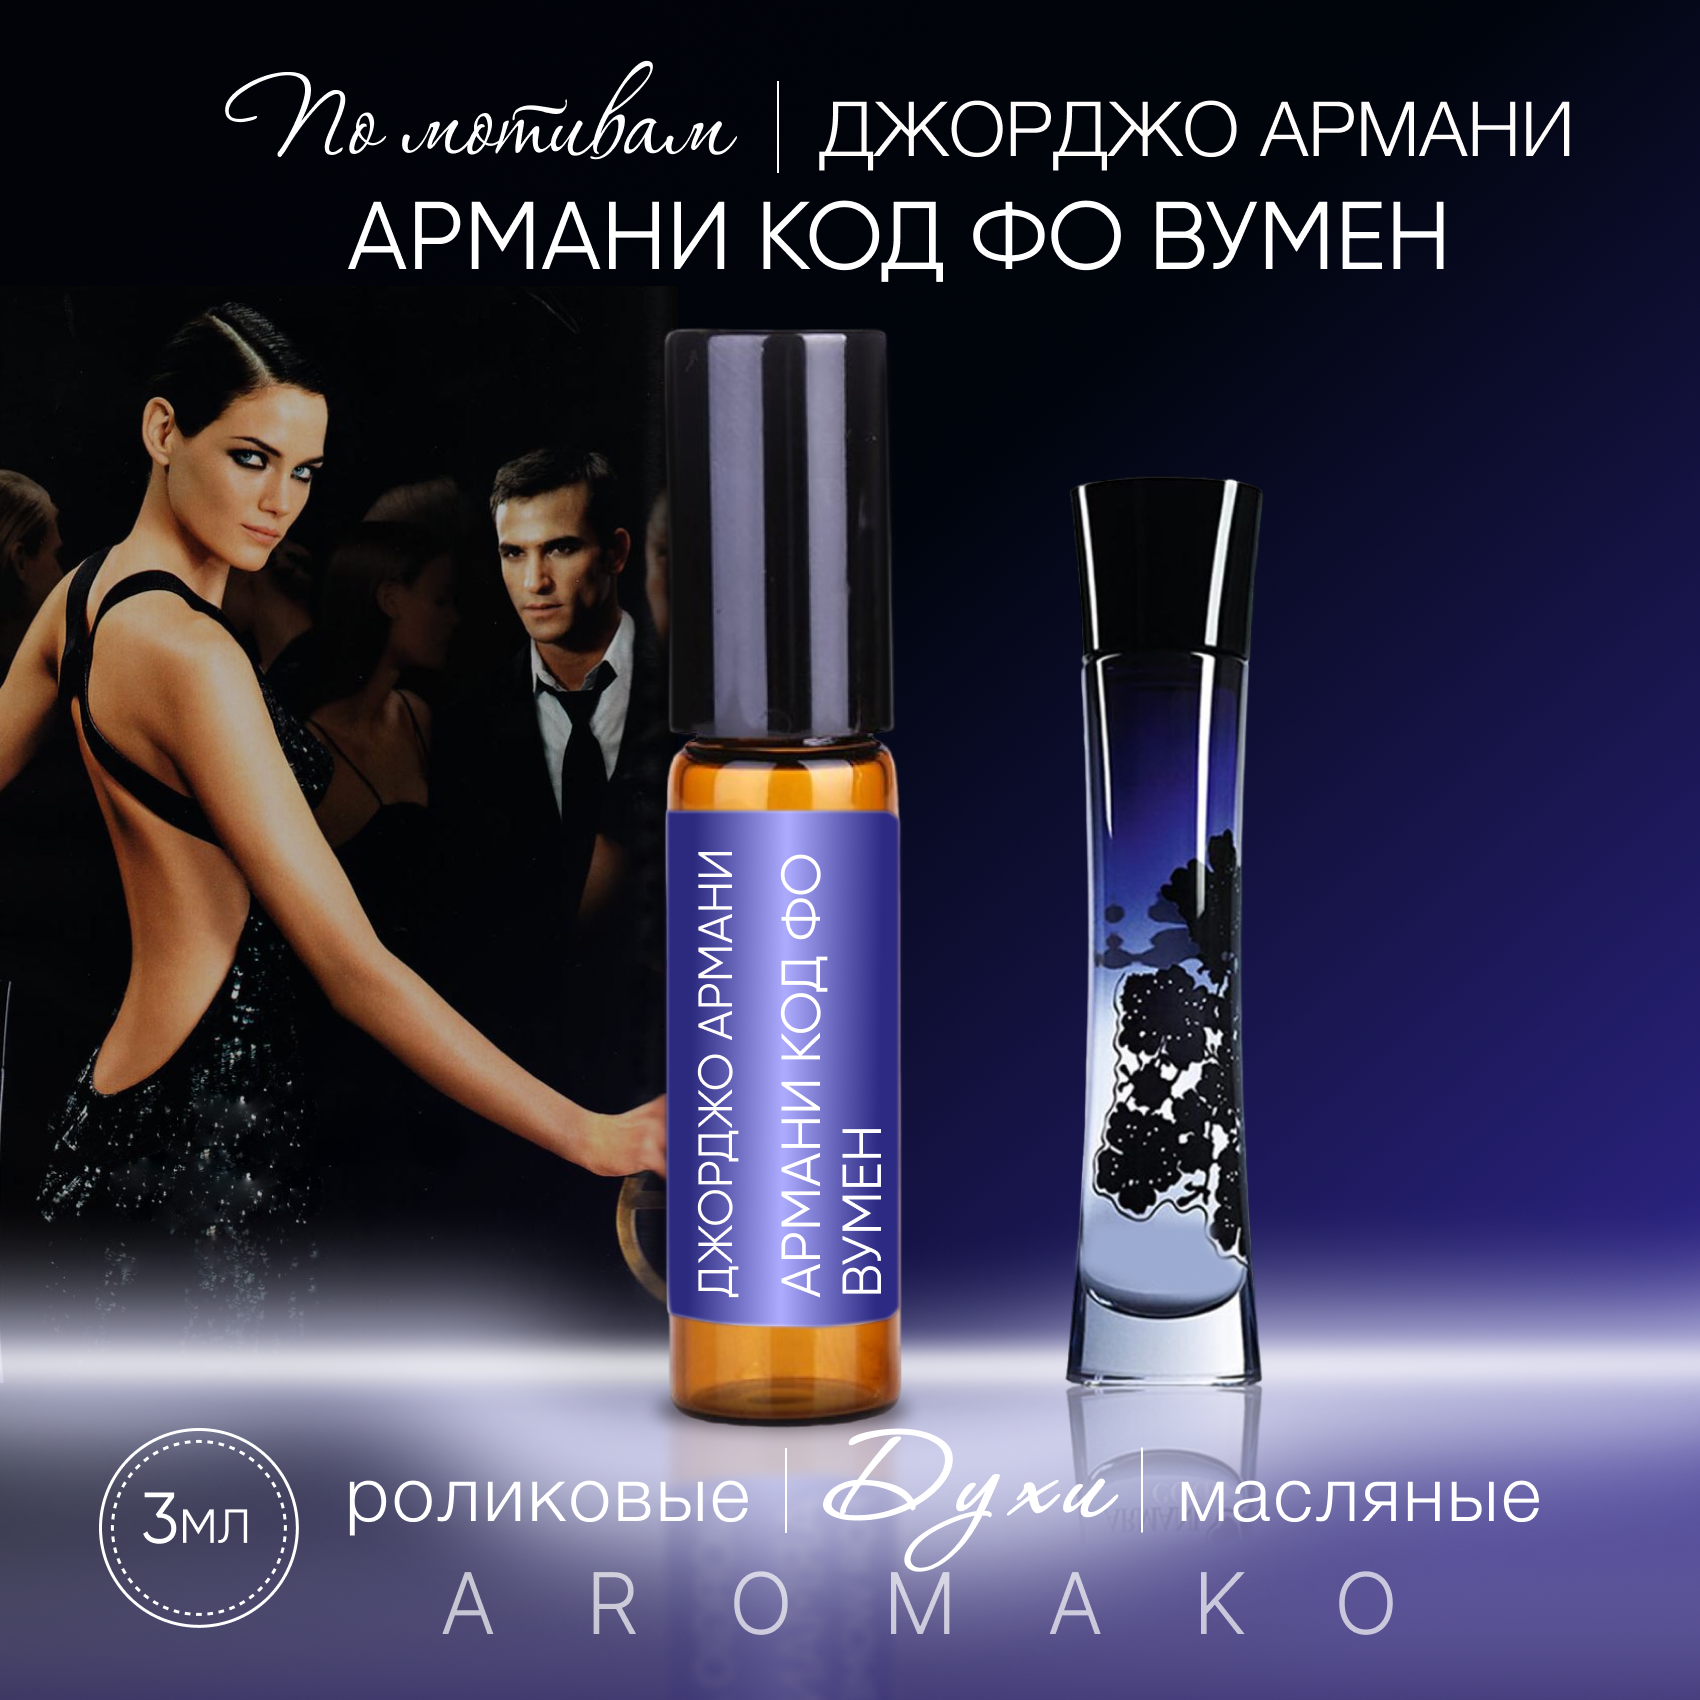 Духи масляные, парфюм - ролик по мотивам Giorgio Armani "Armani Code for Women" 3 мл, AROMAKO